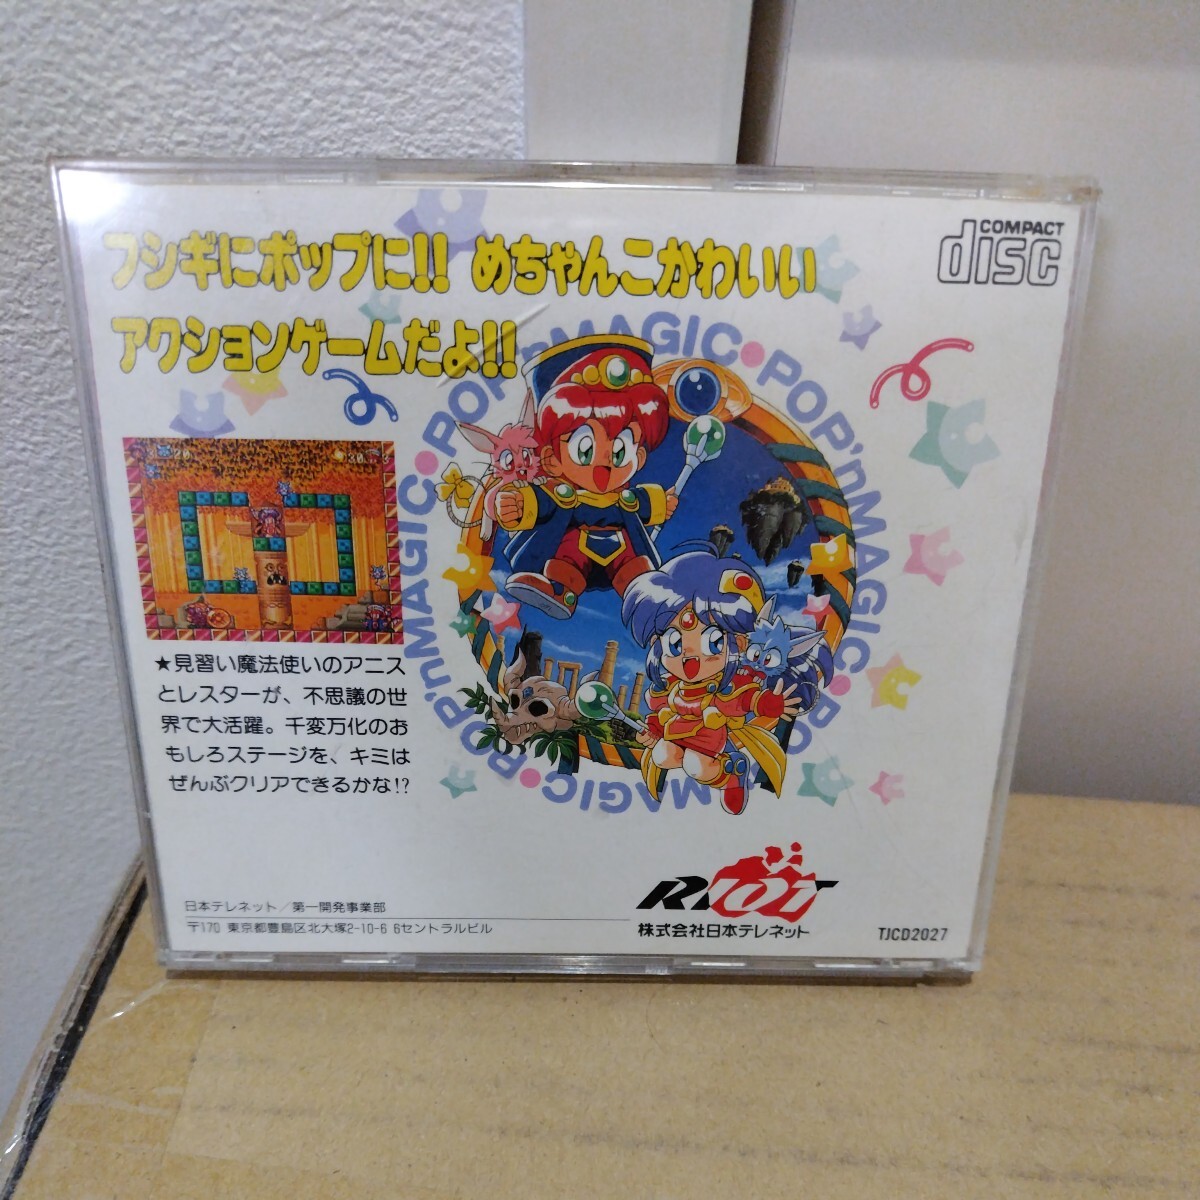 SUPER CD-ROM 日本テレネットぽっぷnまじっくの画像2